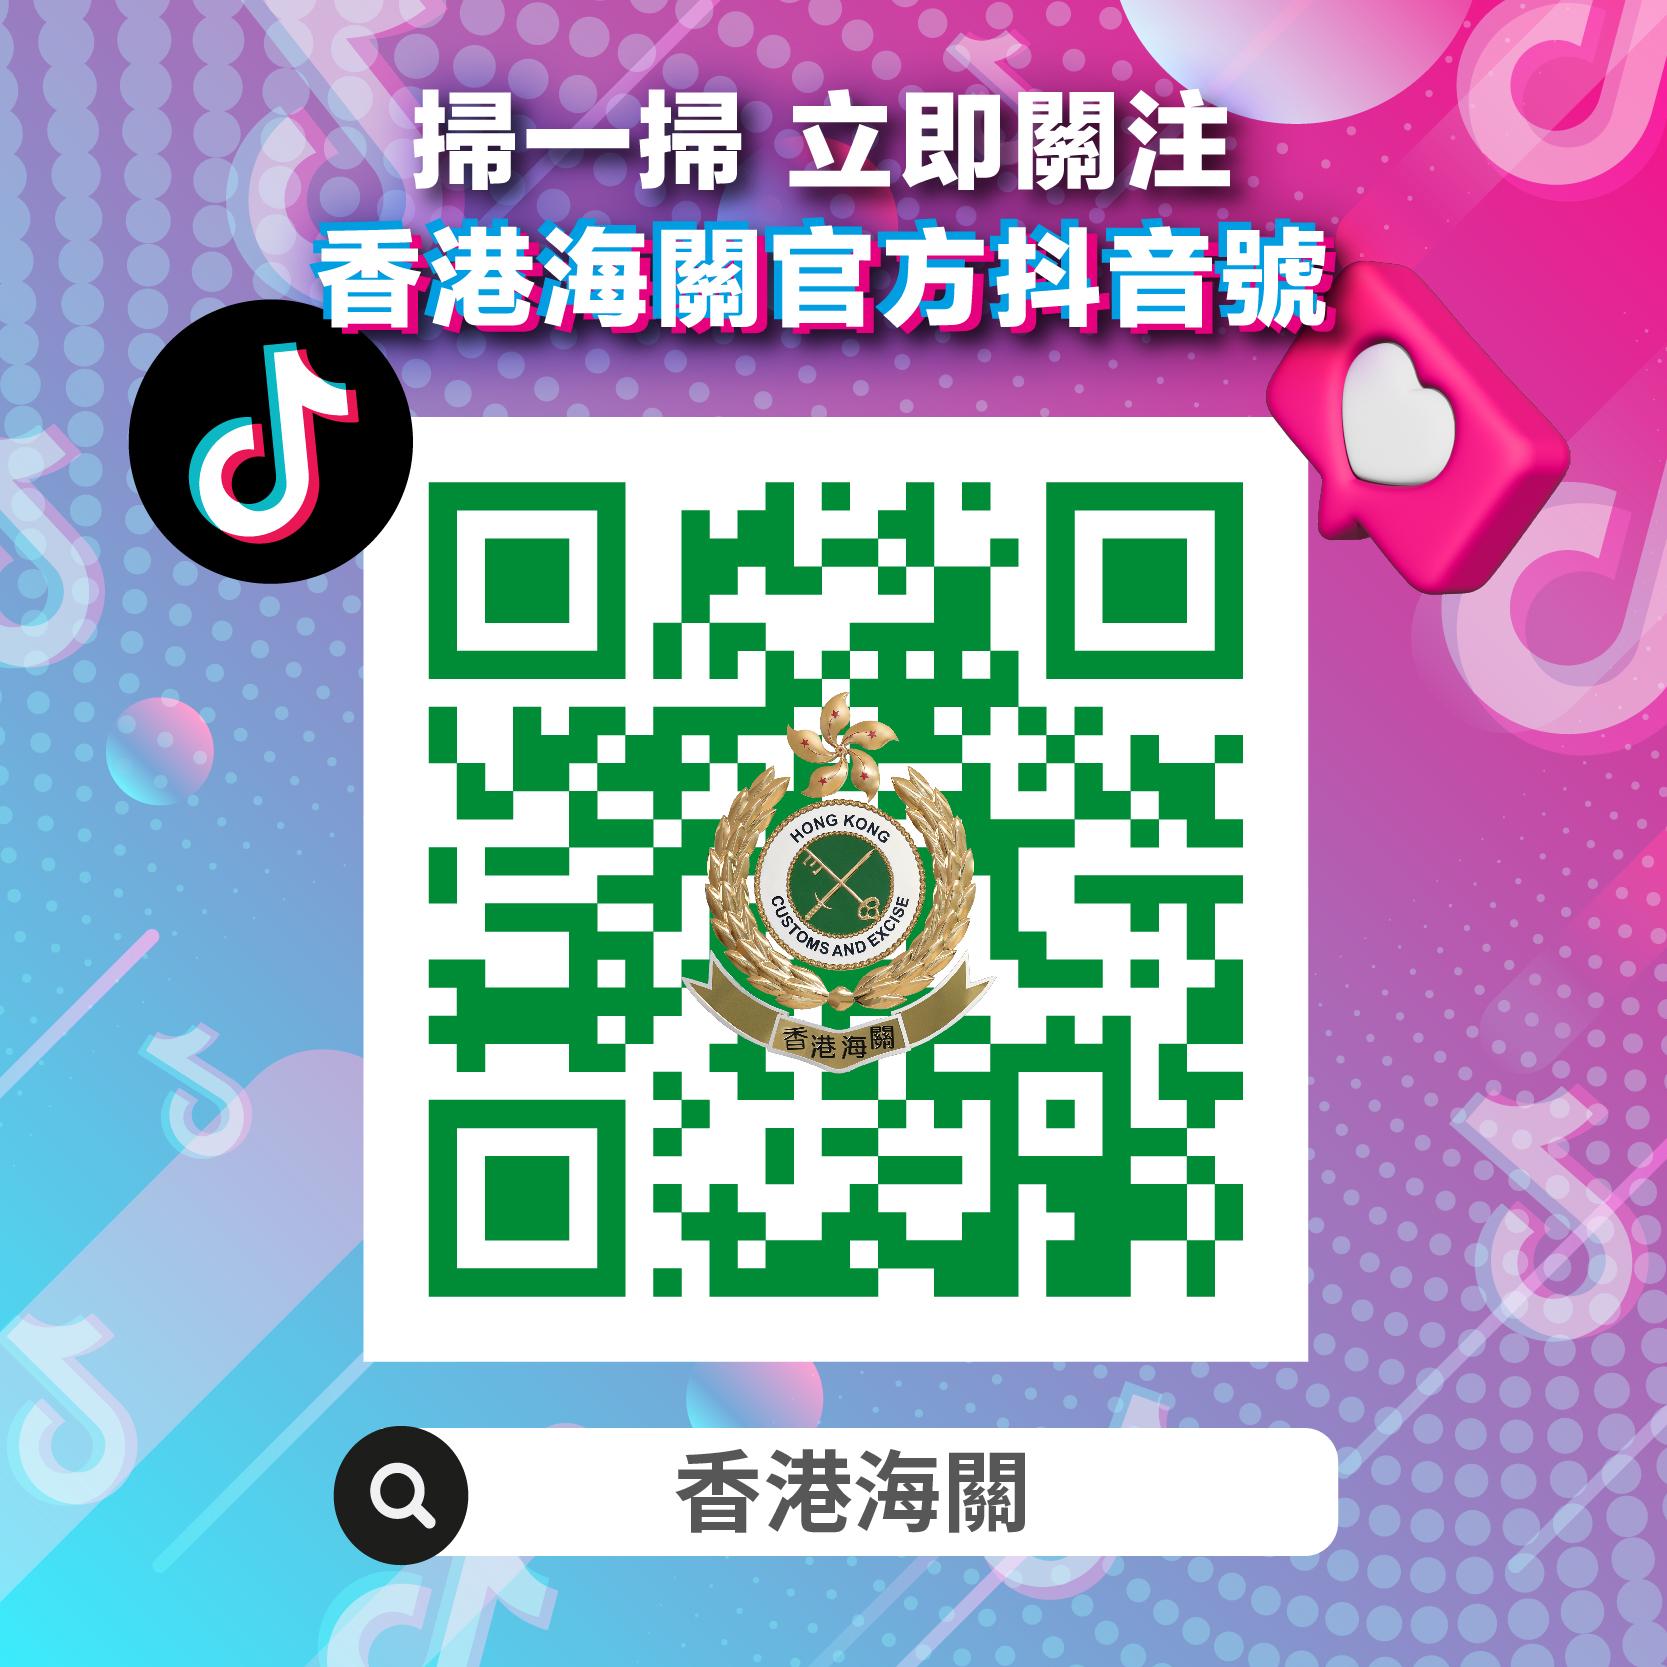 香港海关抖音官方帐号今日（四月二十六日）正式启用，海关关长何佩珊特别为此拍摄宣传短片作开通序幕。图示香港海关抖音官方帐号的二维码。

